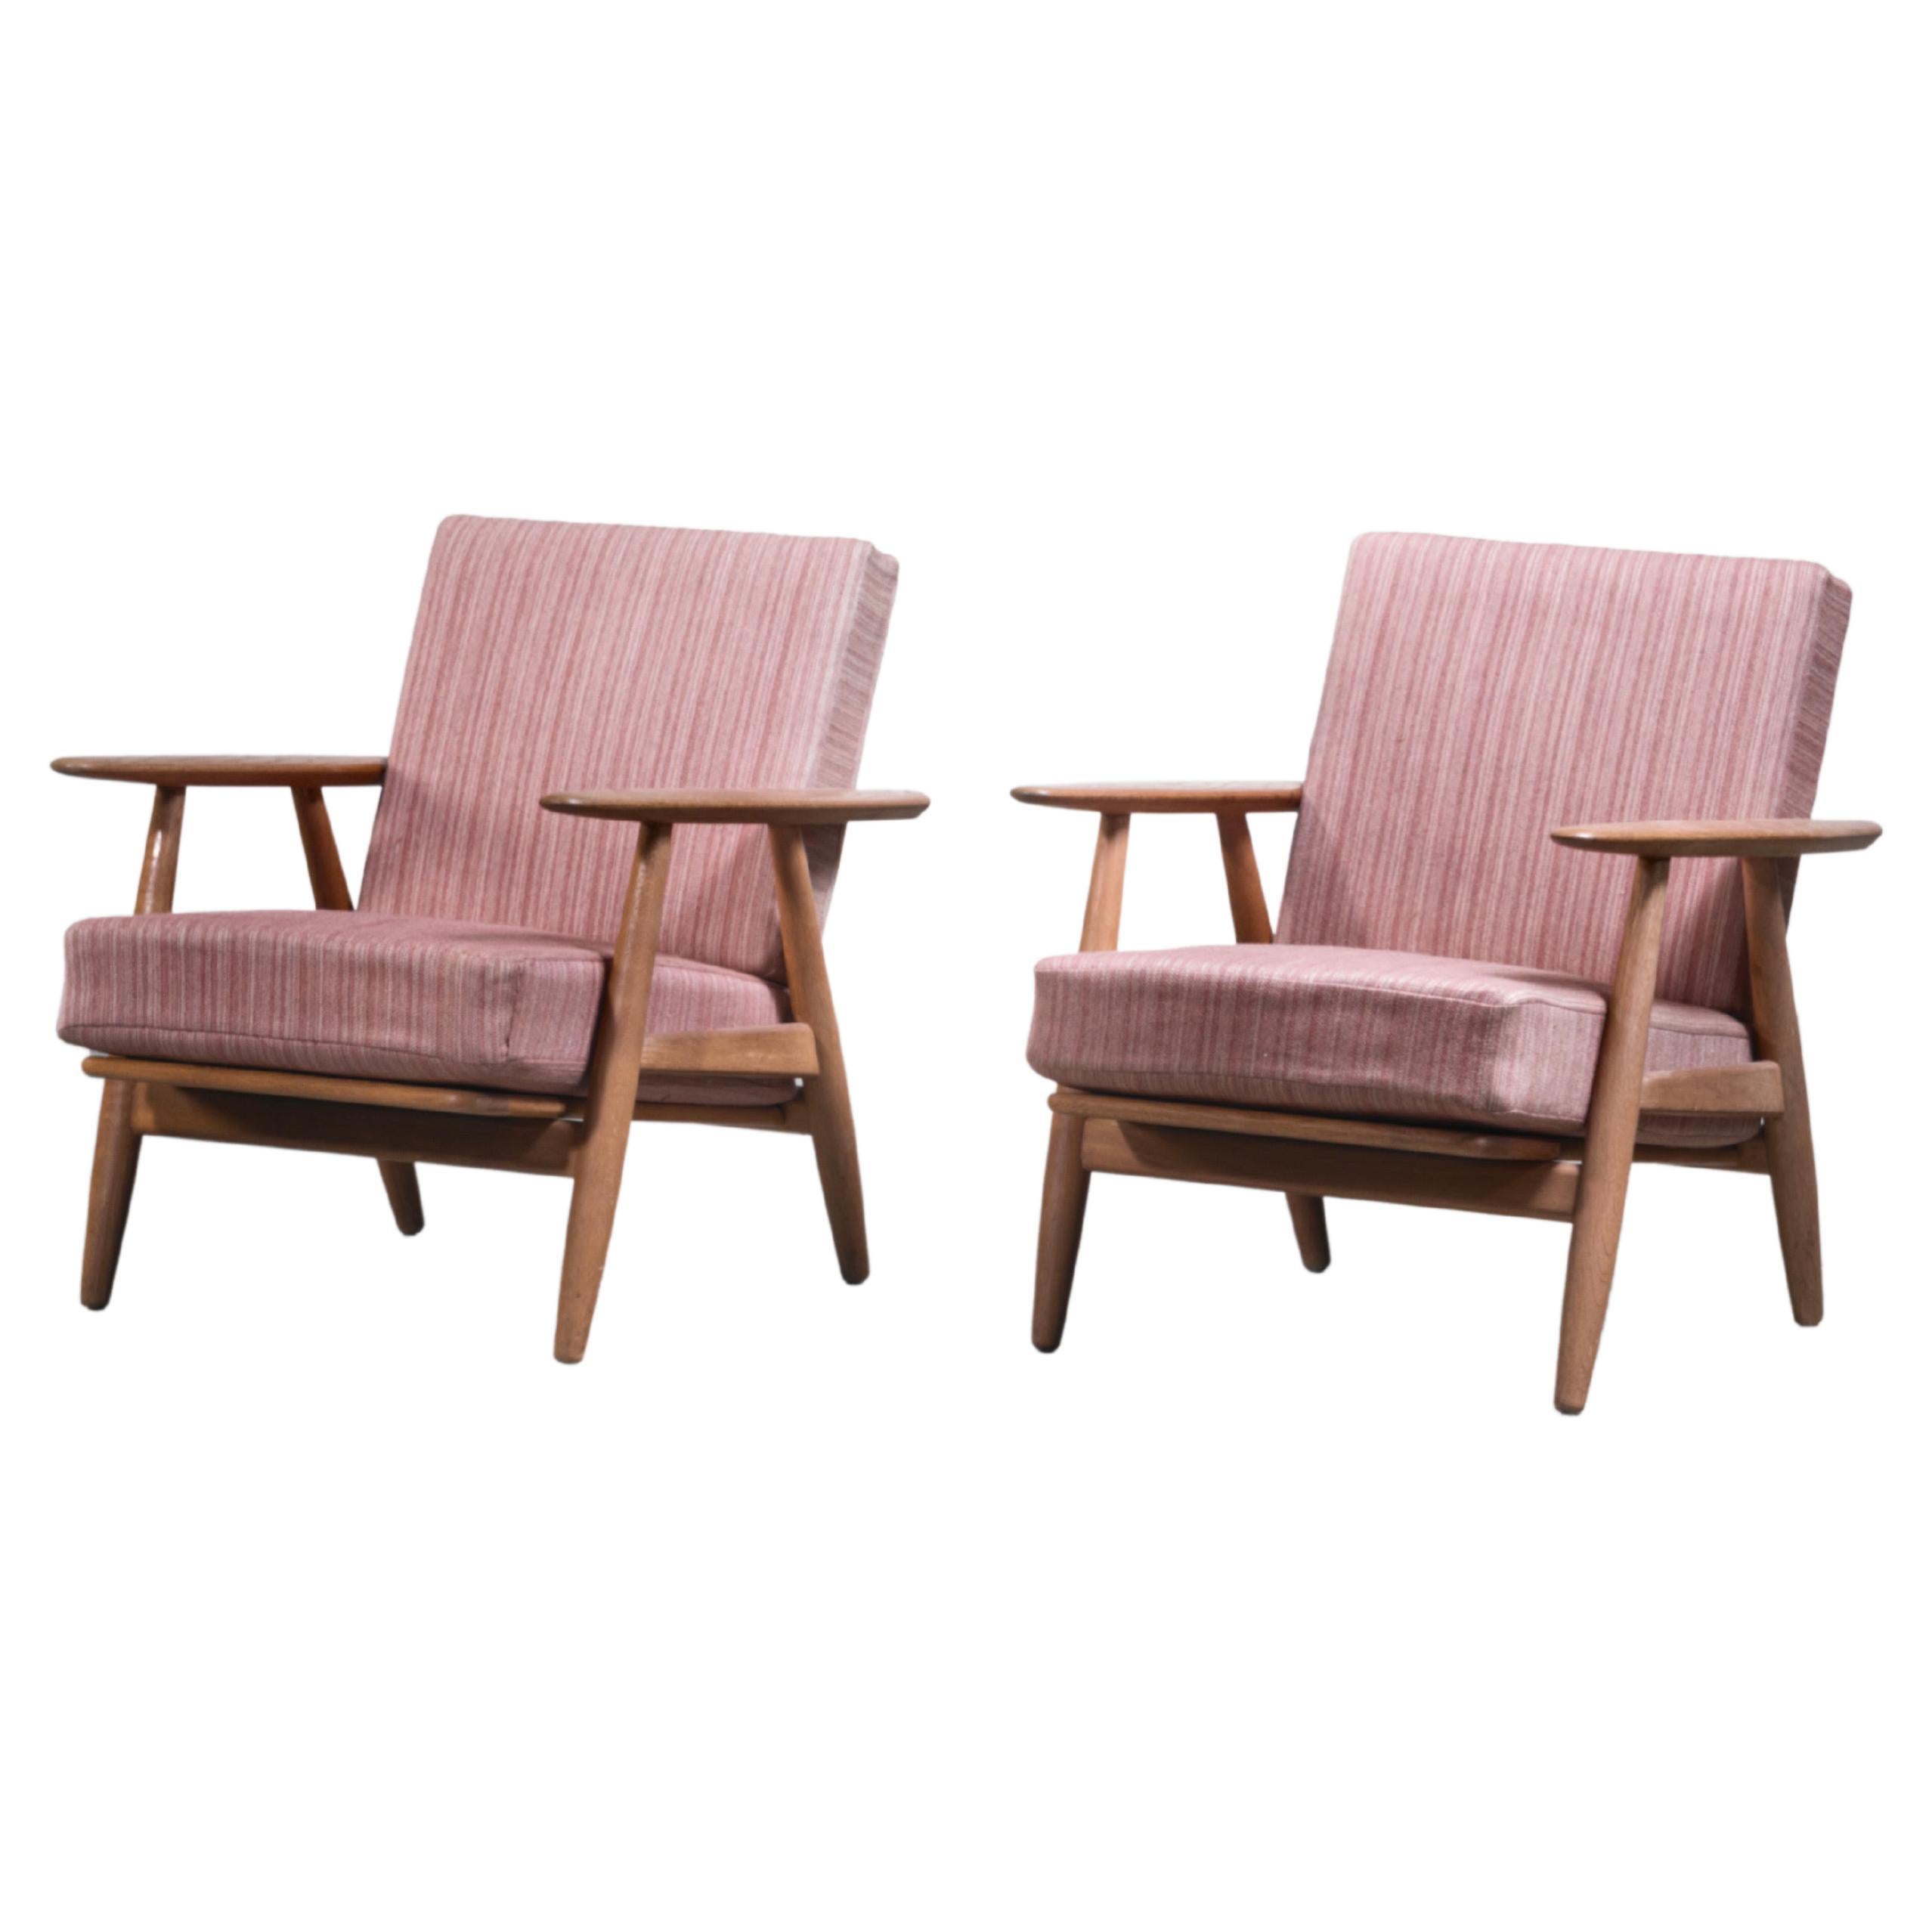 Pair of Hans Wegner GE-240 Chairs in Oak, Denmark, 1950s